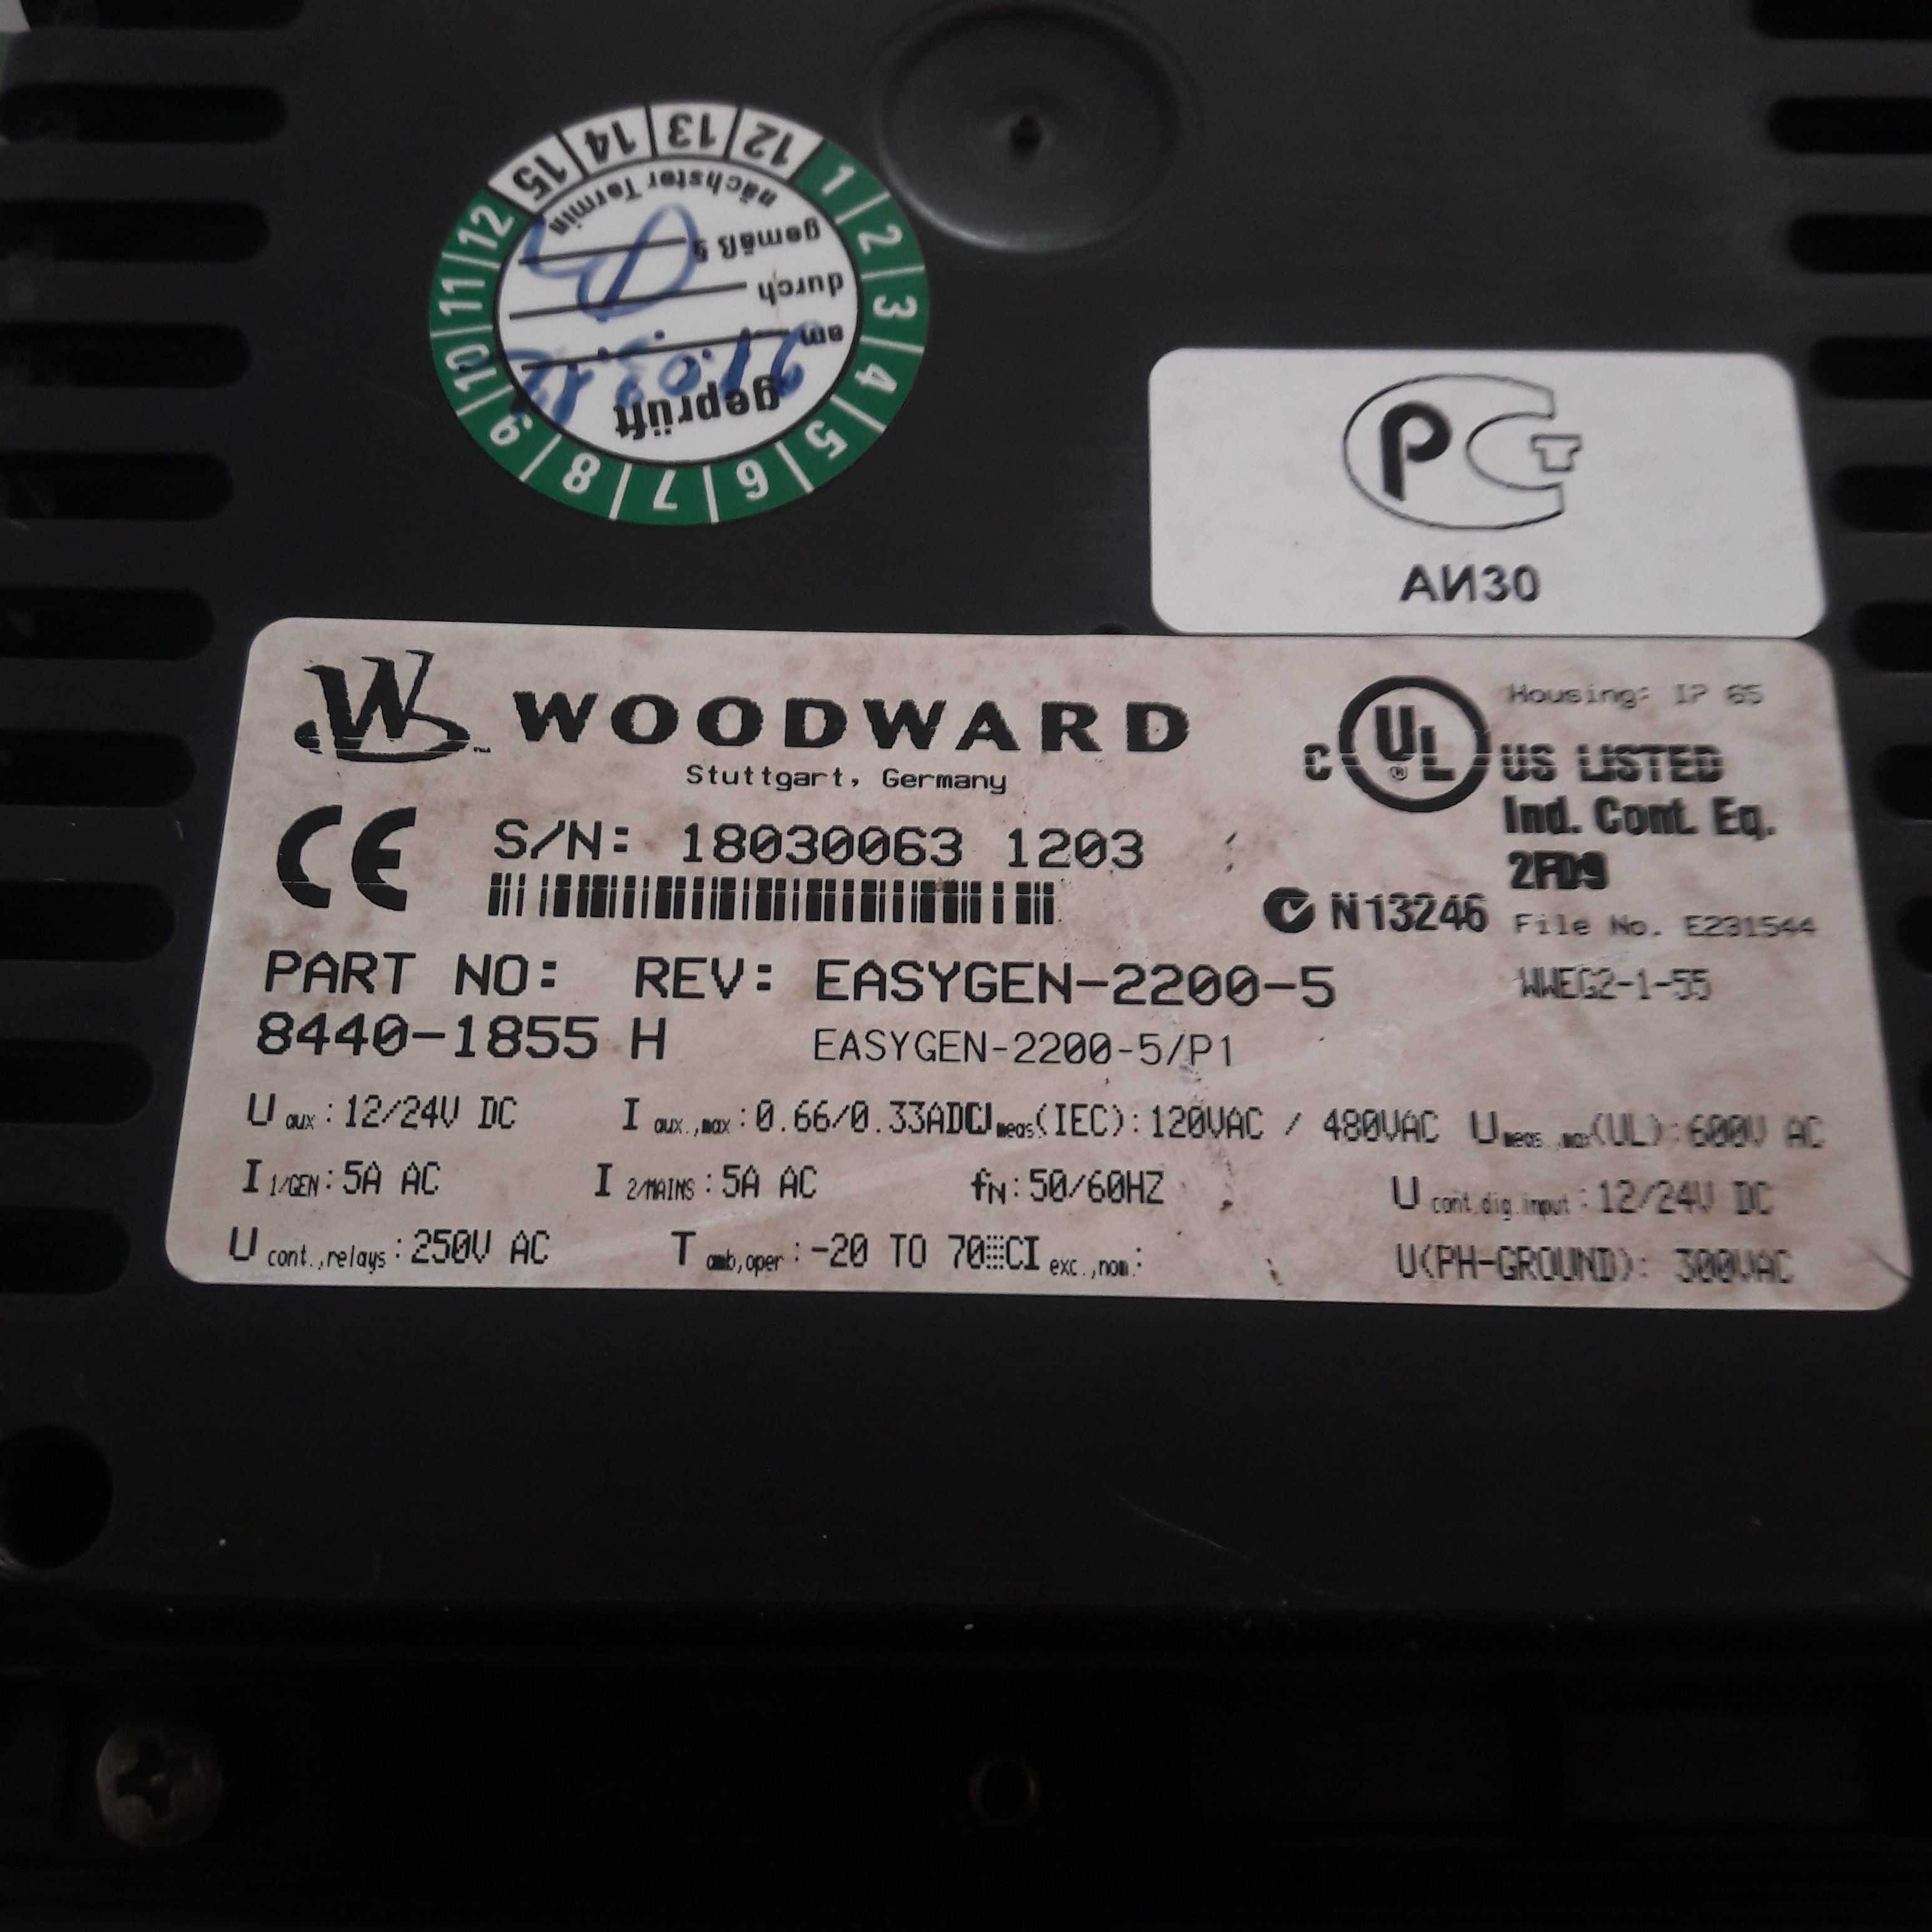 WOODWARD EASYGEN-2200-5/P1